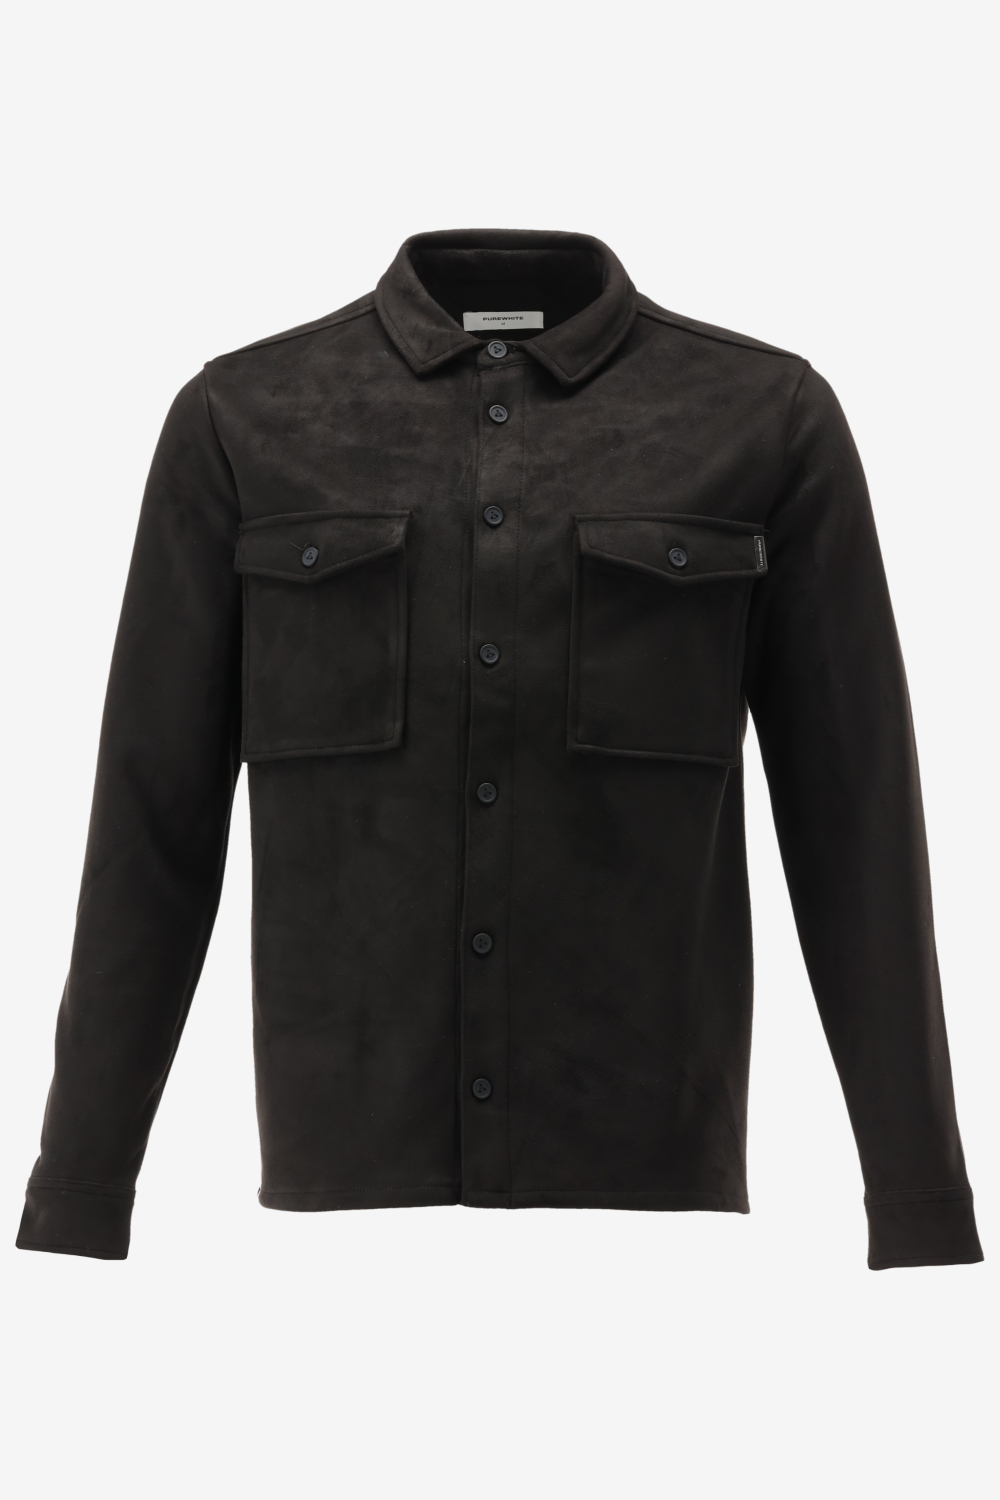 Purewhite -  Heren Regular Fit   Overhemd  - Zwart - Maat M